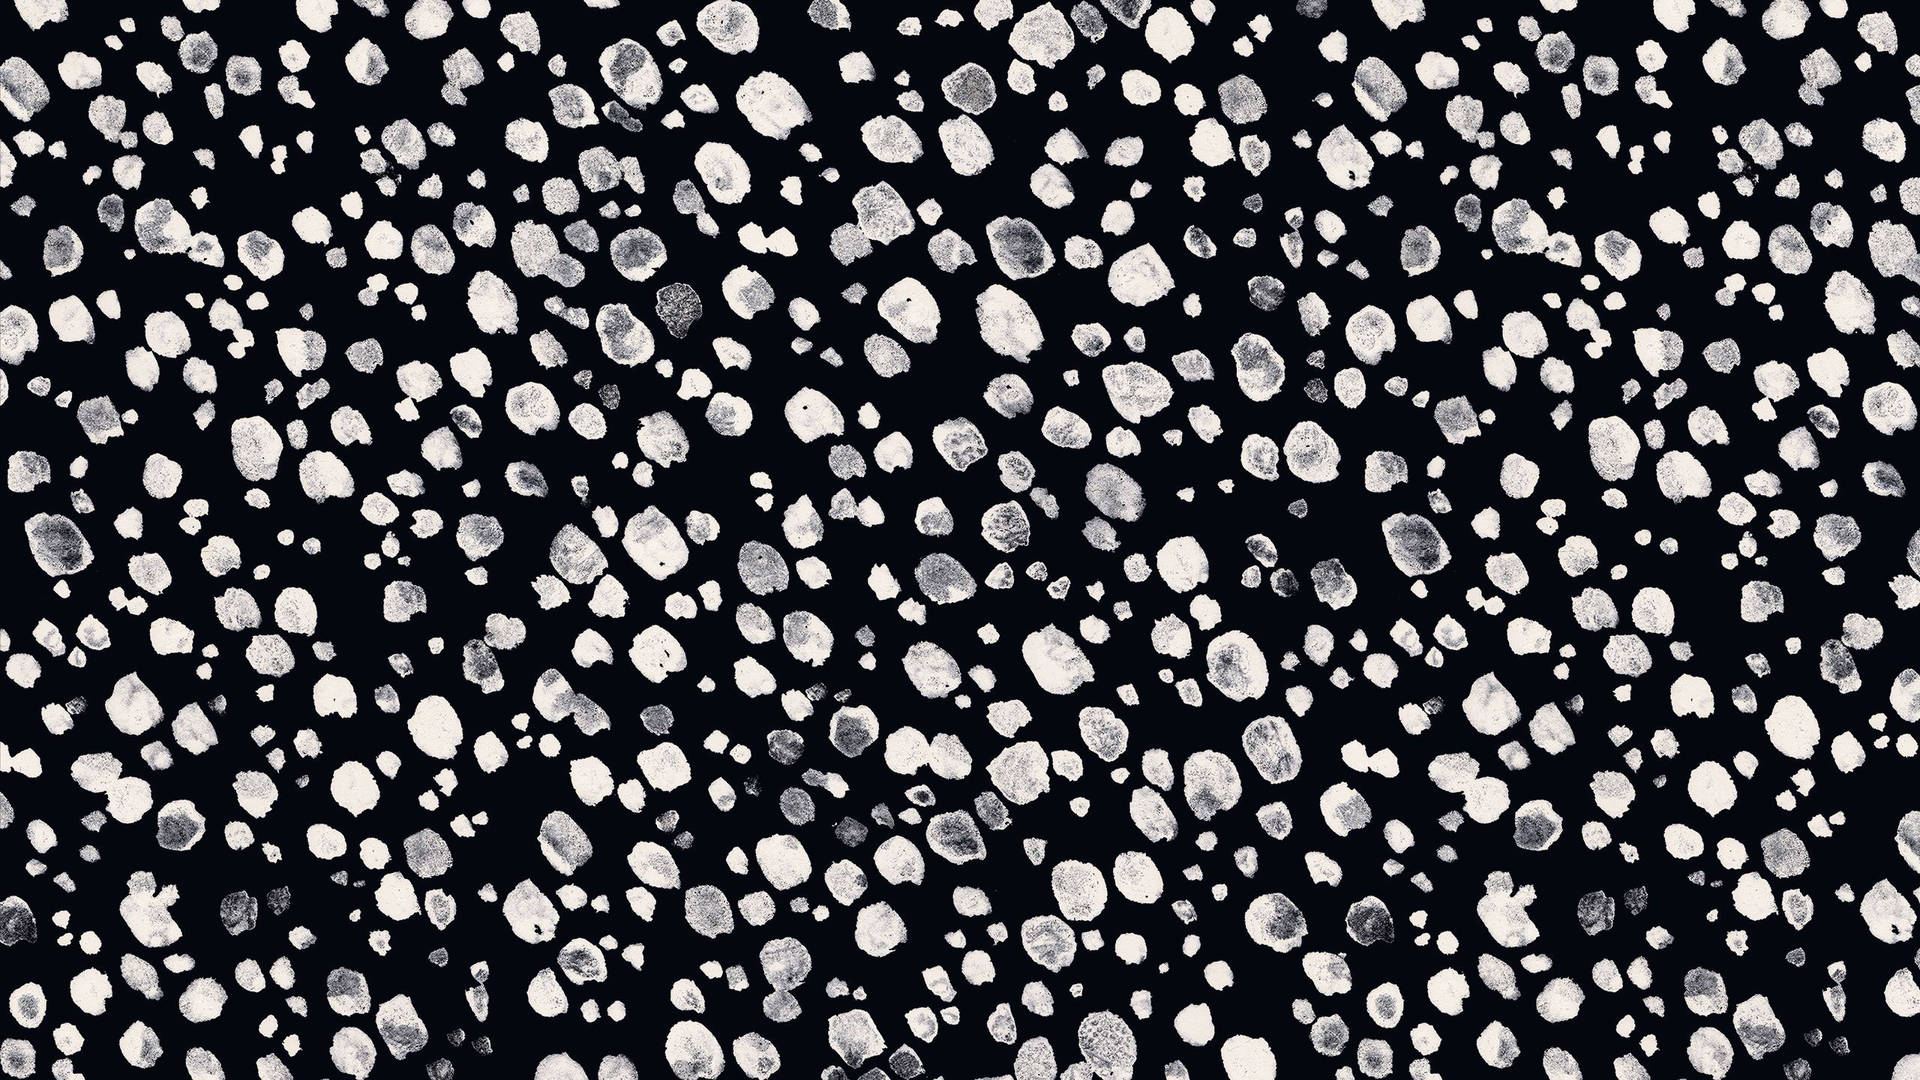 Caption: Intriguing Black Dot Iphone Crystal Landscape Image Background